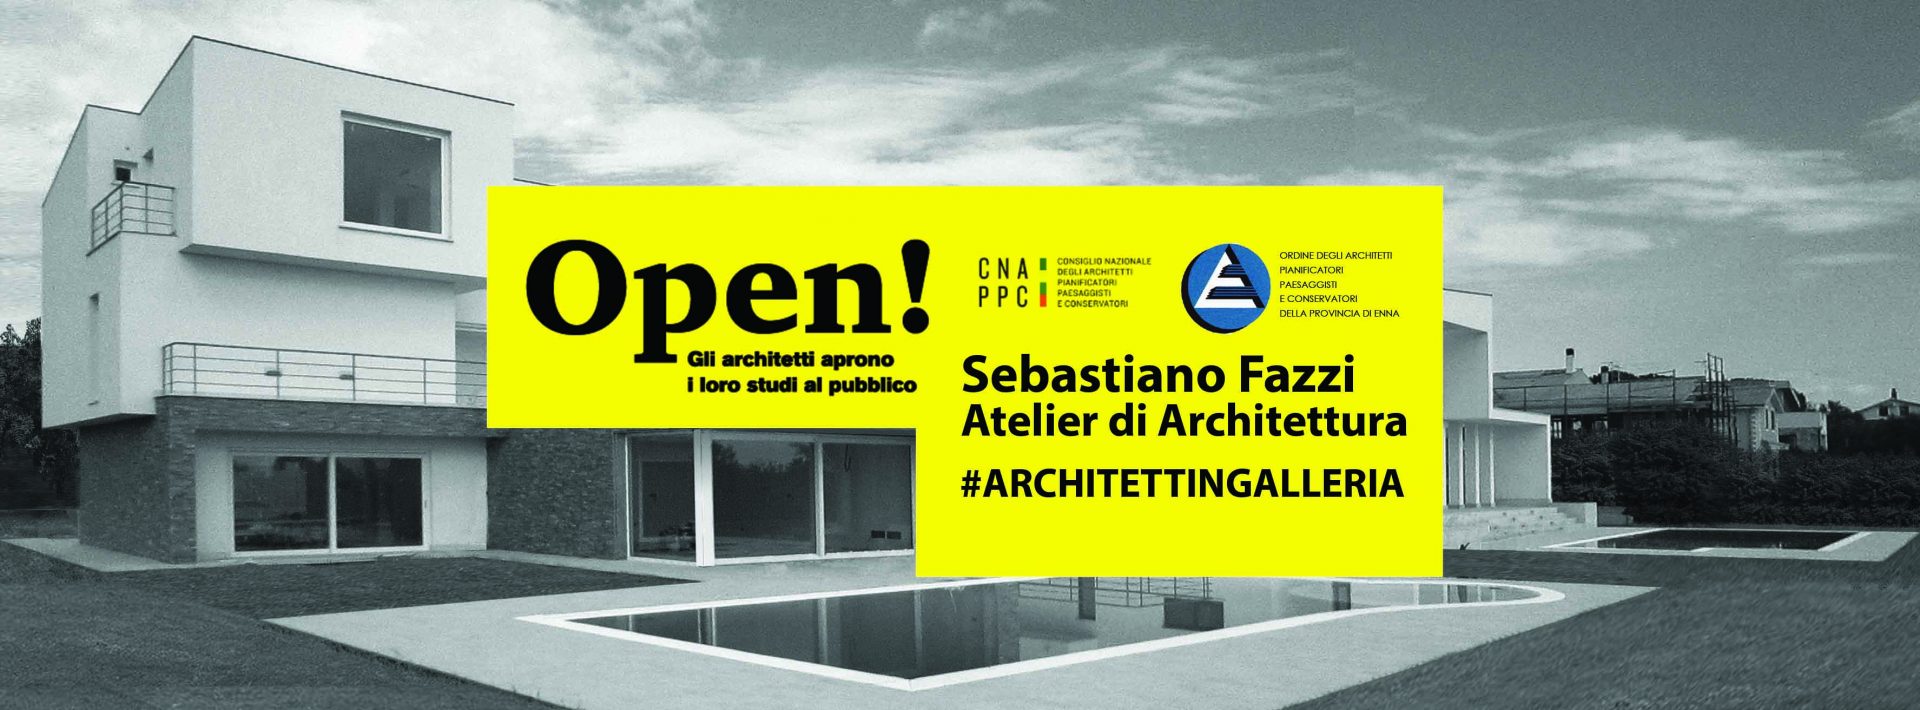 Sebastiano Fazzi Atelier di Architettura